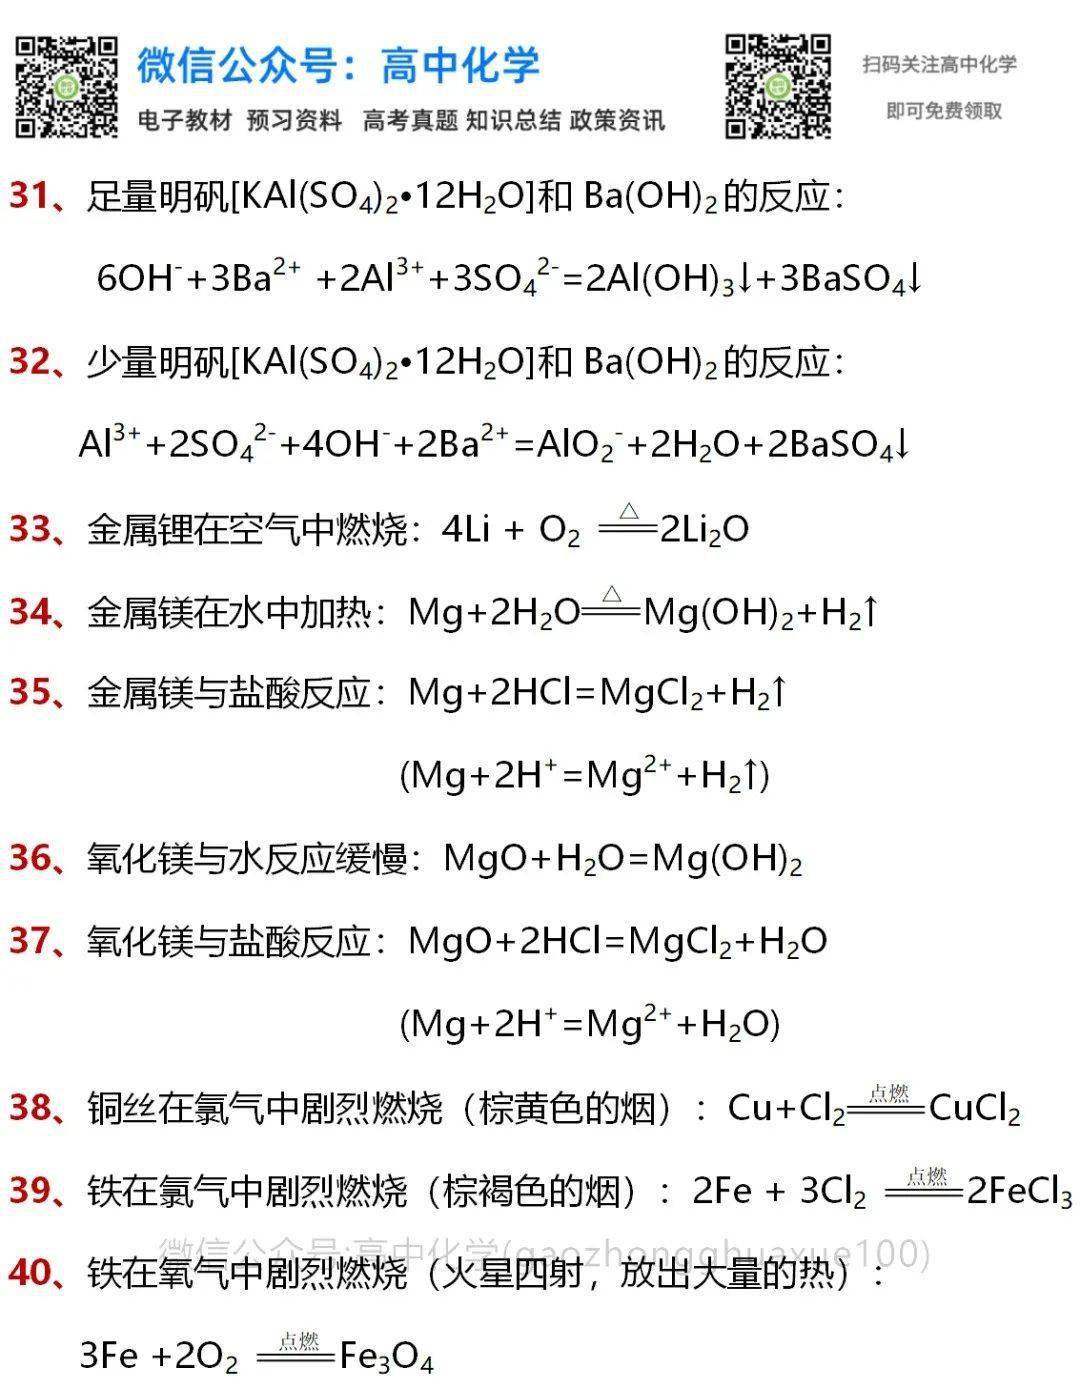 高中化学必修一常见化学方程式全汇总，建议收藏默写~_手机搜狐网